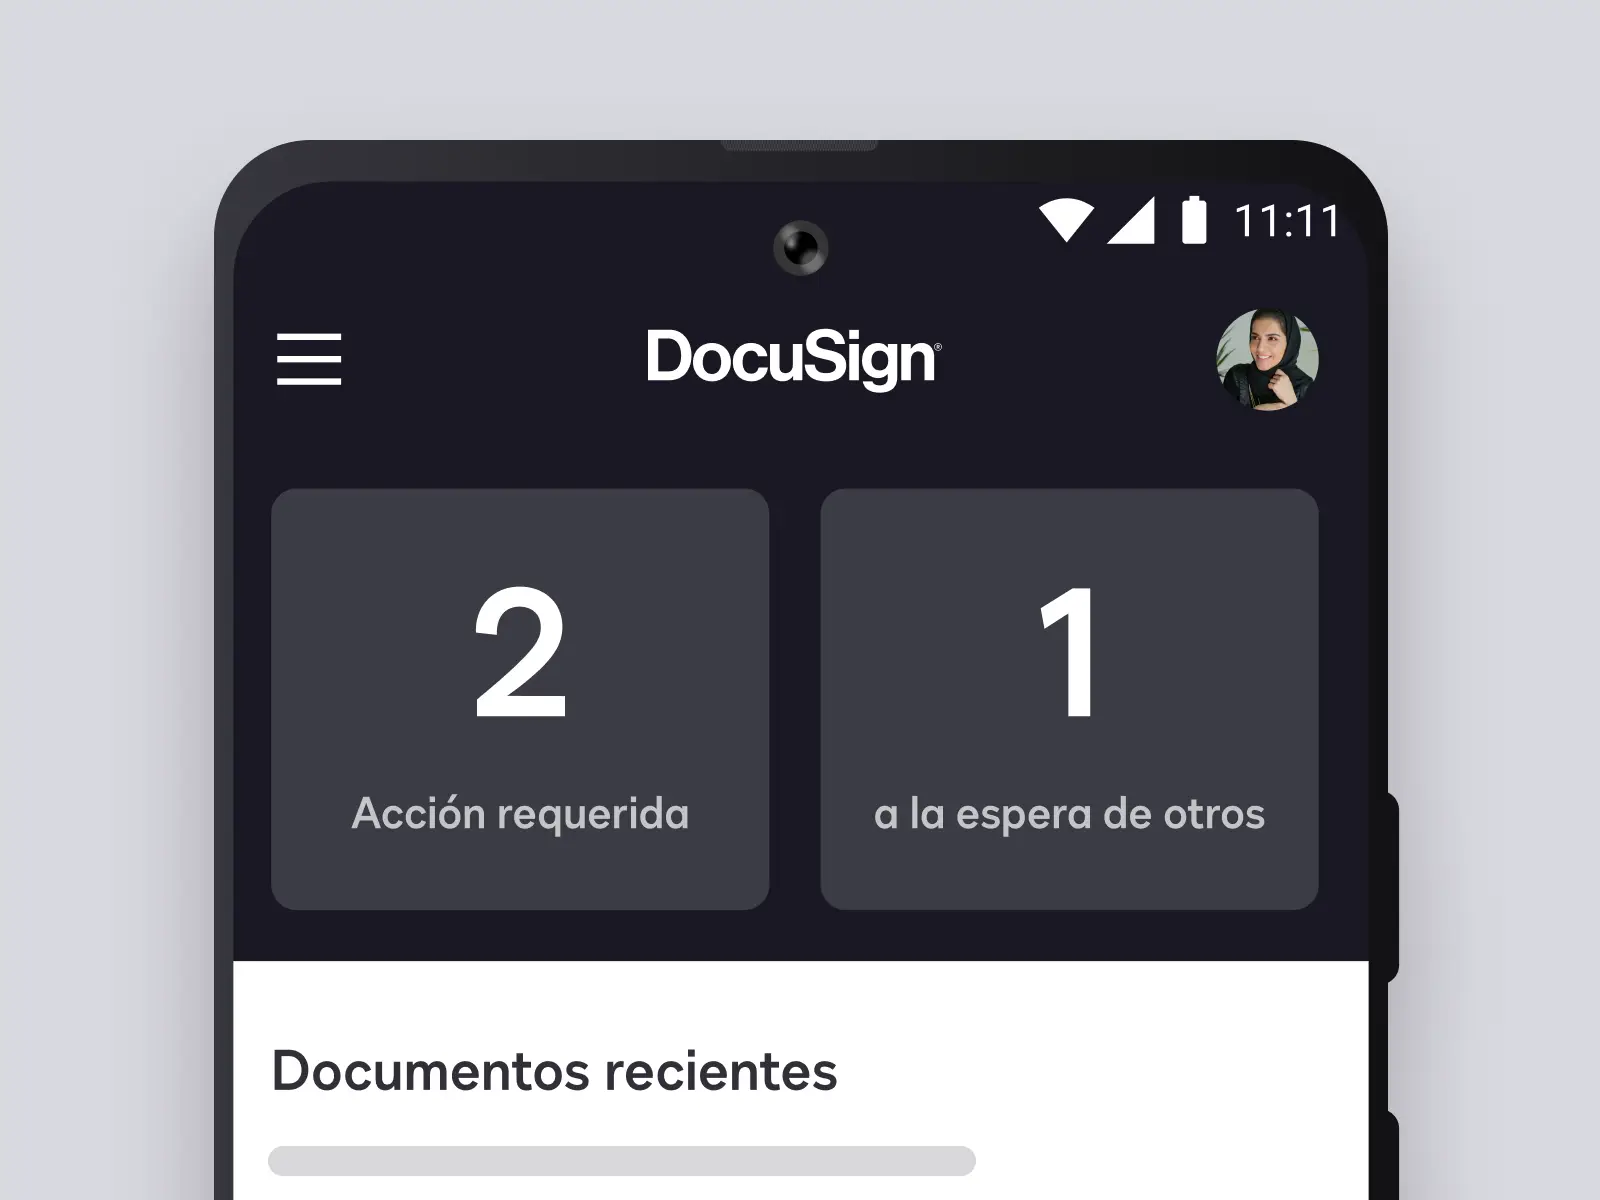 Pantalla del teléfono que muestra la aplicación DocuSign con documentos recientes y acciones requeridas